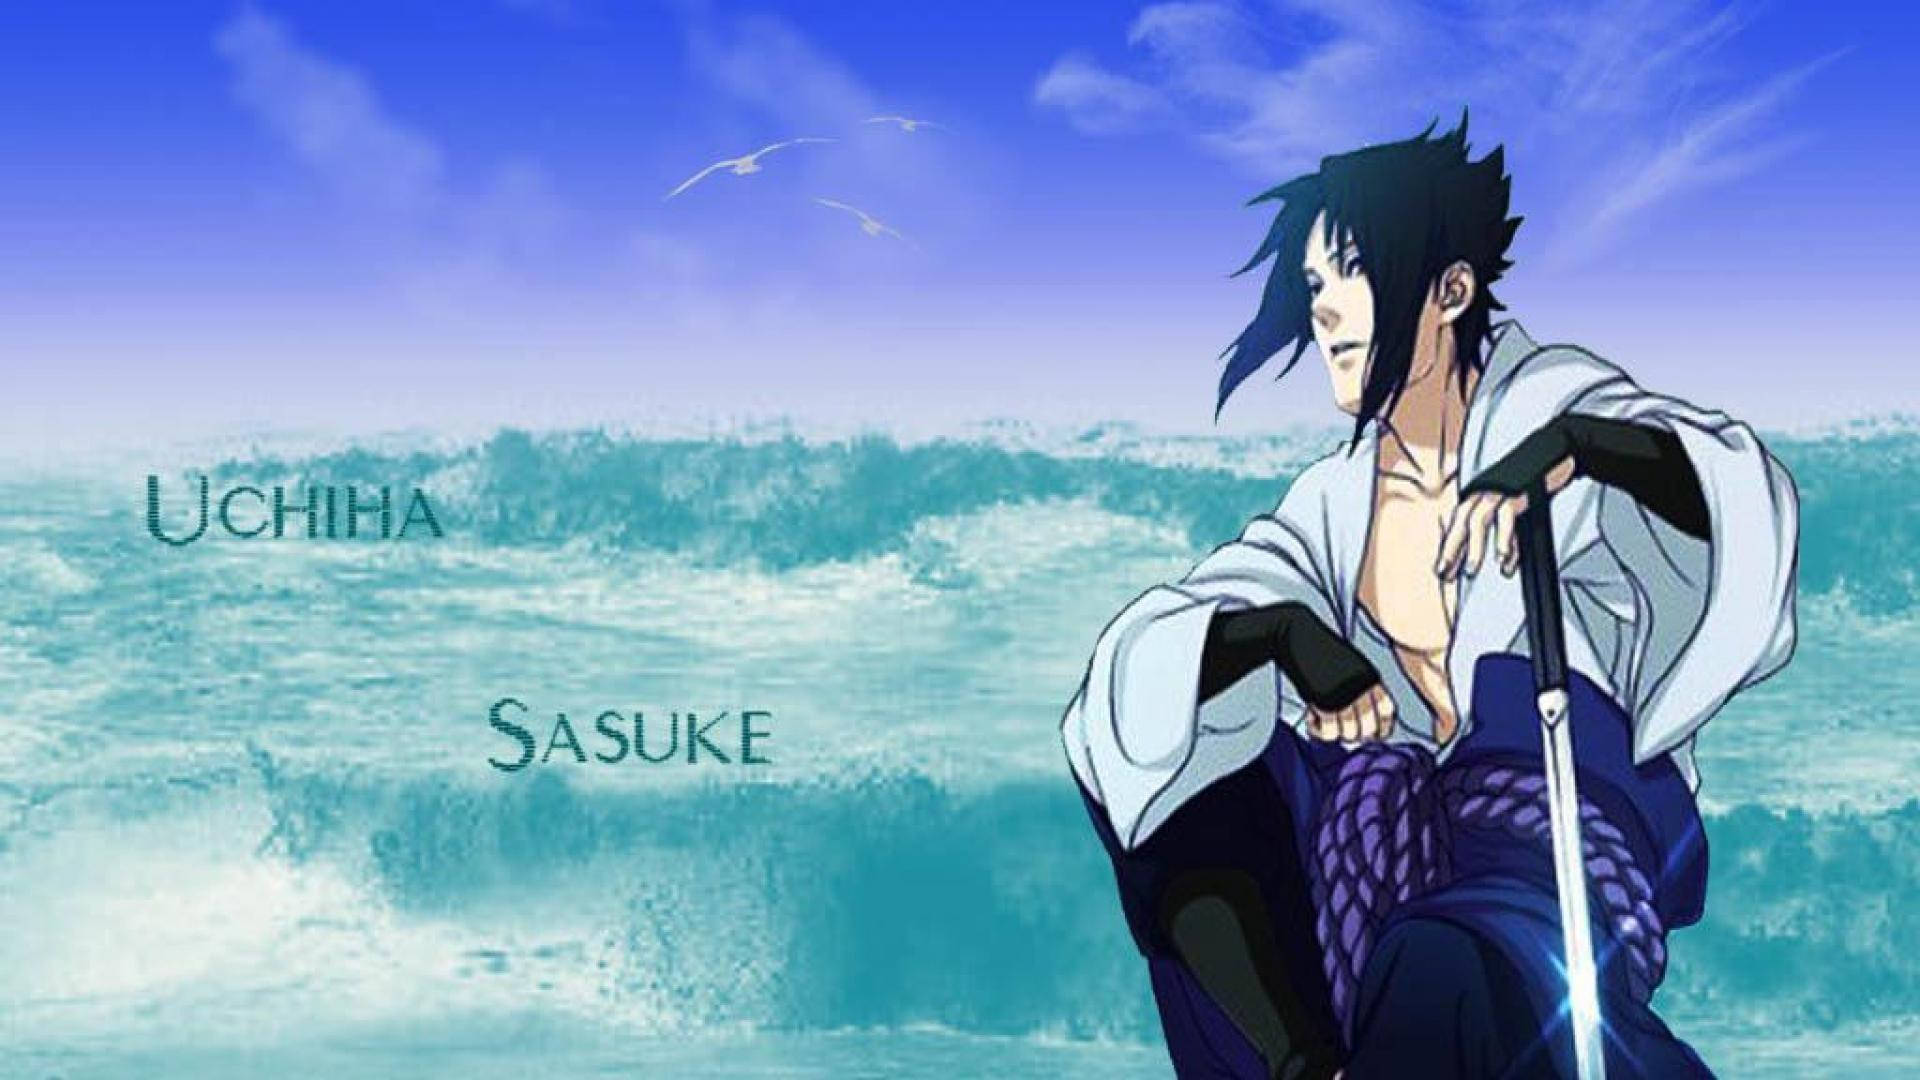 Aesthetic Sasuke Against Ocean Waves Wallpaper